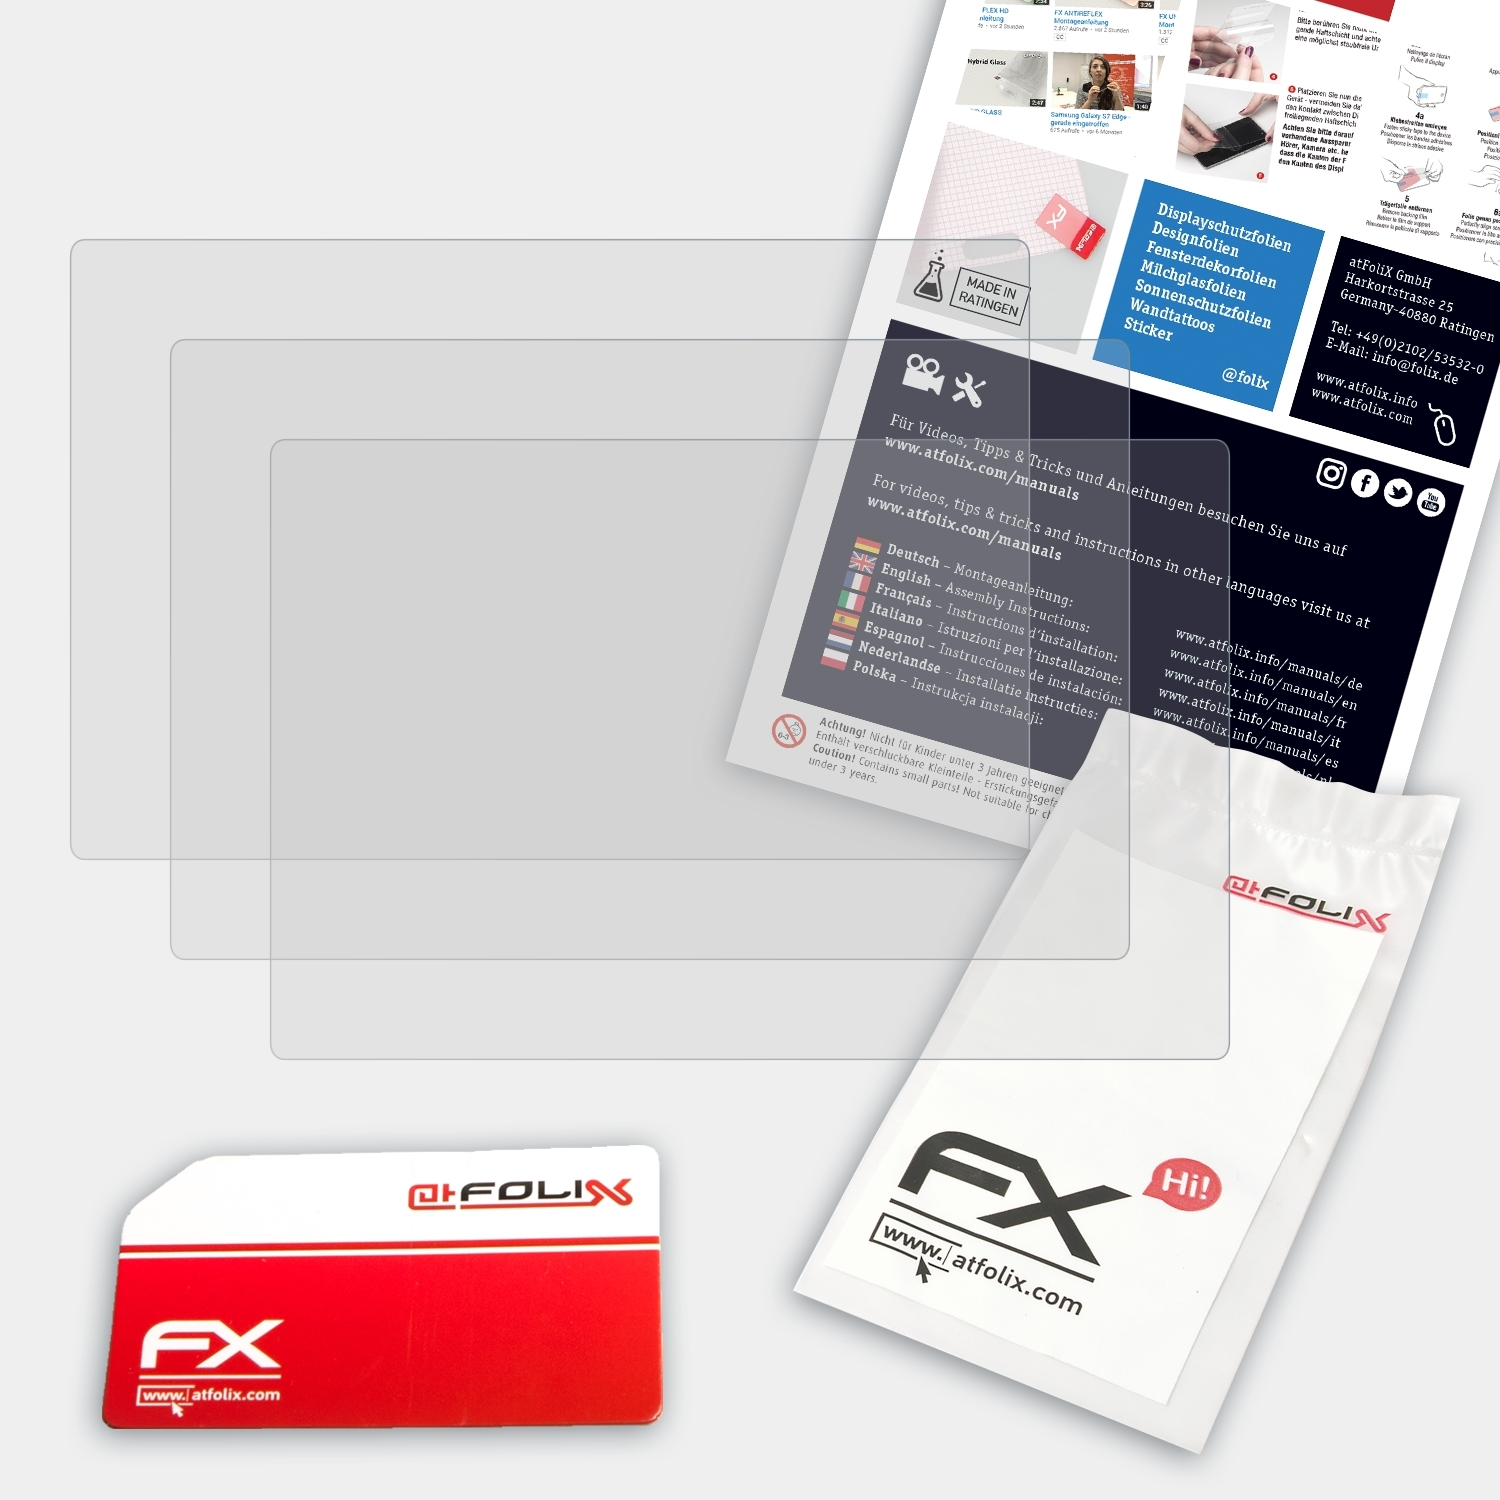 FX-Antireflex Actionpro 3x ATFOLIX X8) Displayschutz(für